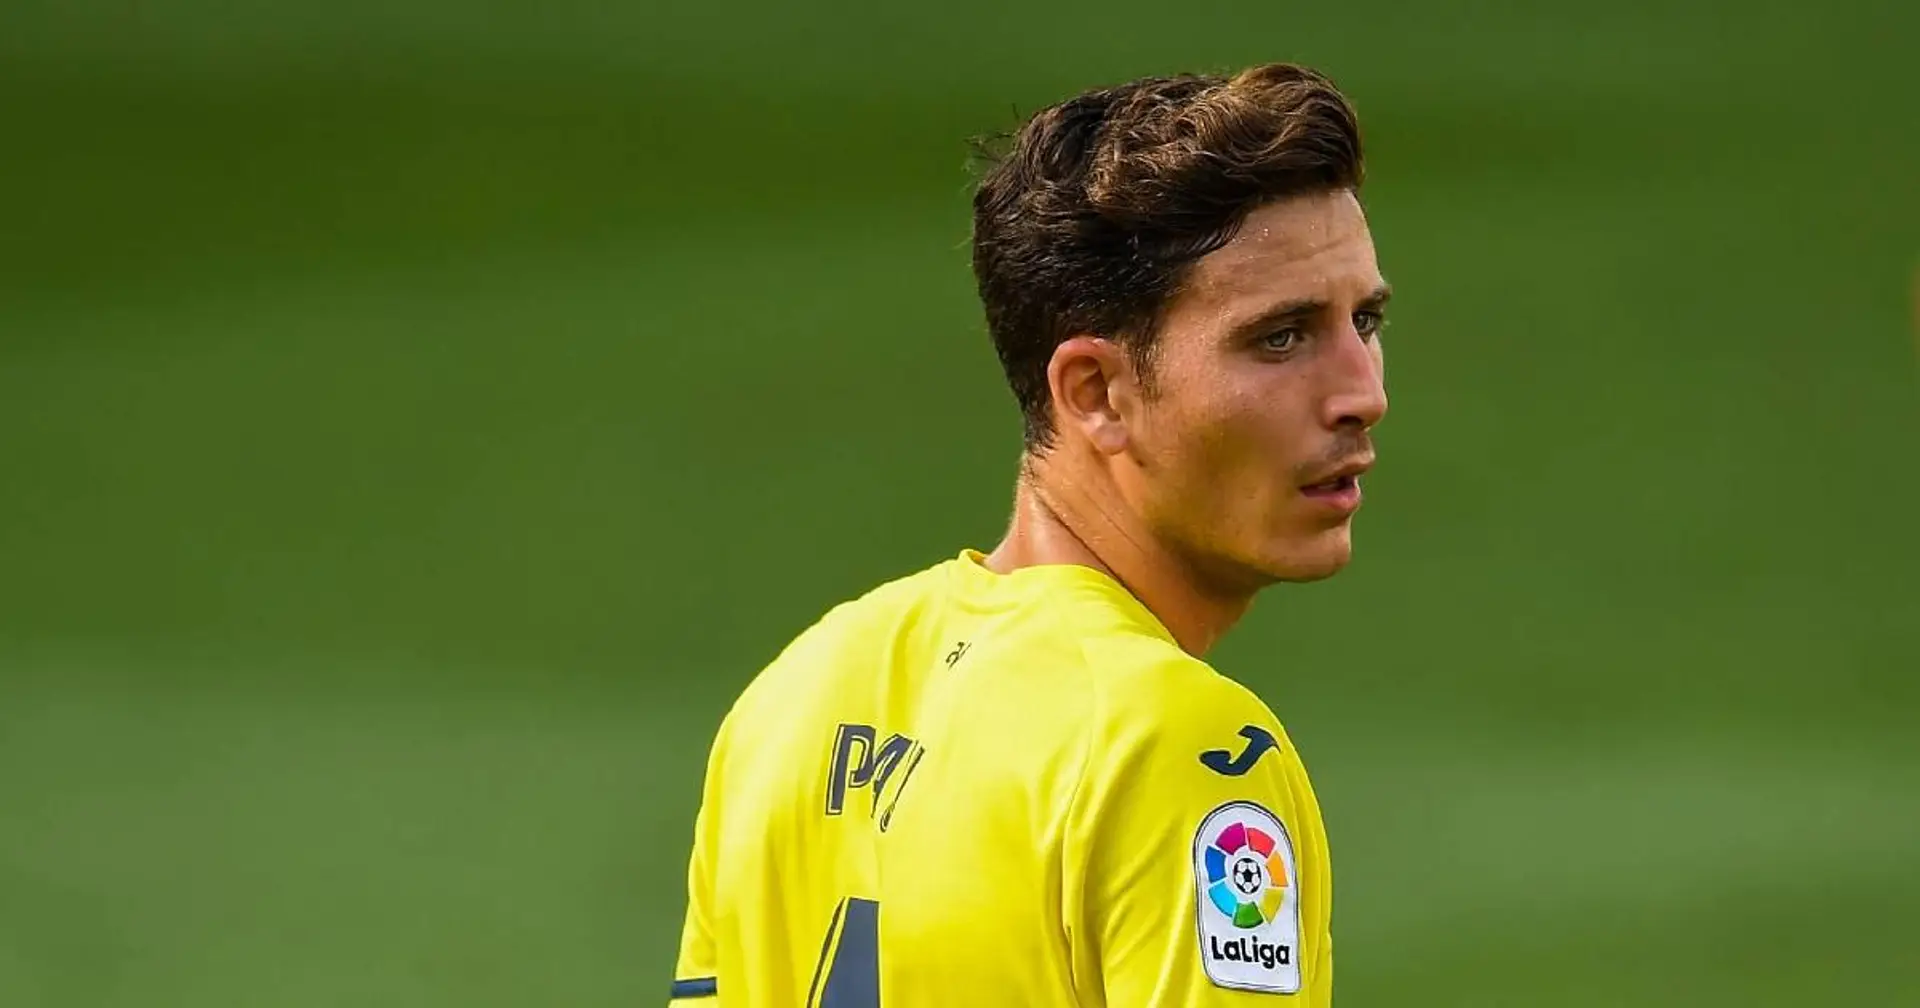 Le défenseur central de Villarreal Pau Torres apparaît comme la cible du Real pour remplacer Ramos (fiabilité: 4 étoiles)